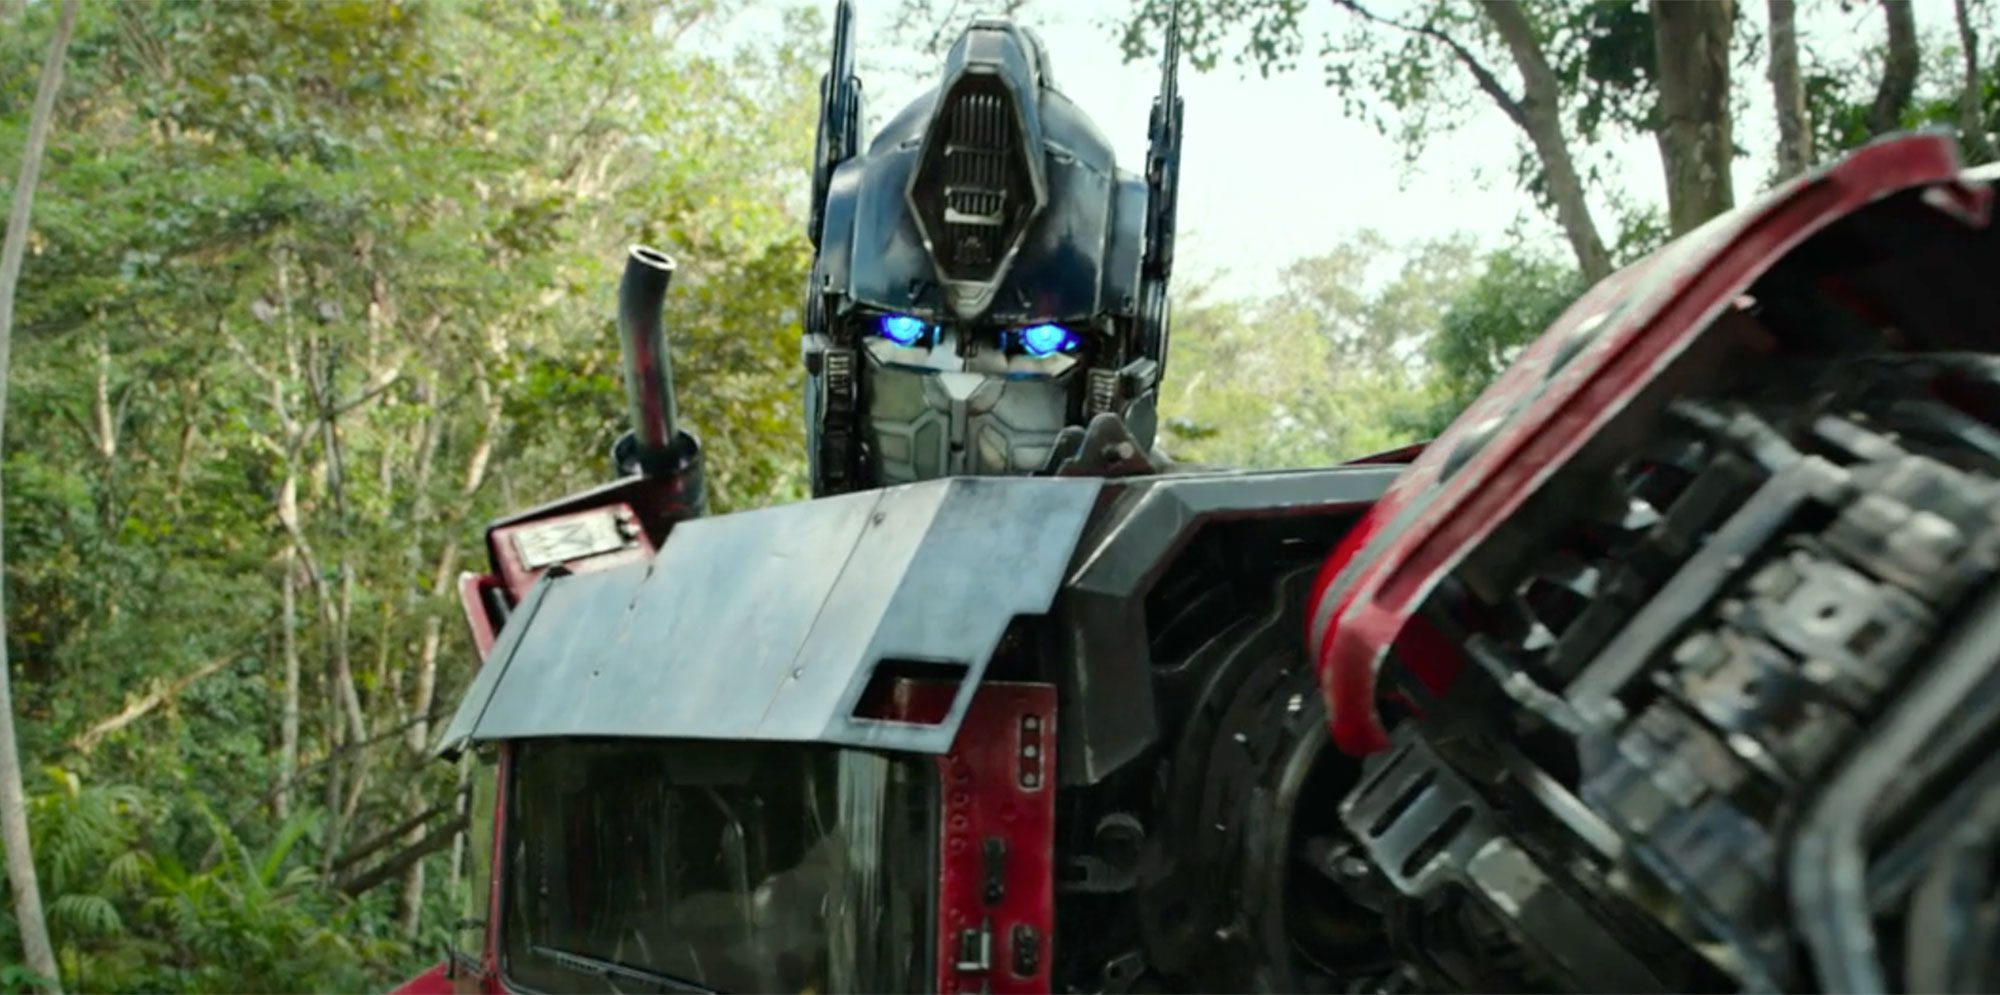 Tudo que sabemos sobre a continuação de Transformers: O Despertar das Feras  - Cinema